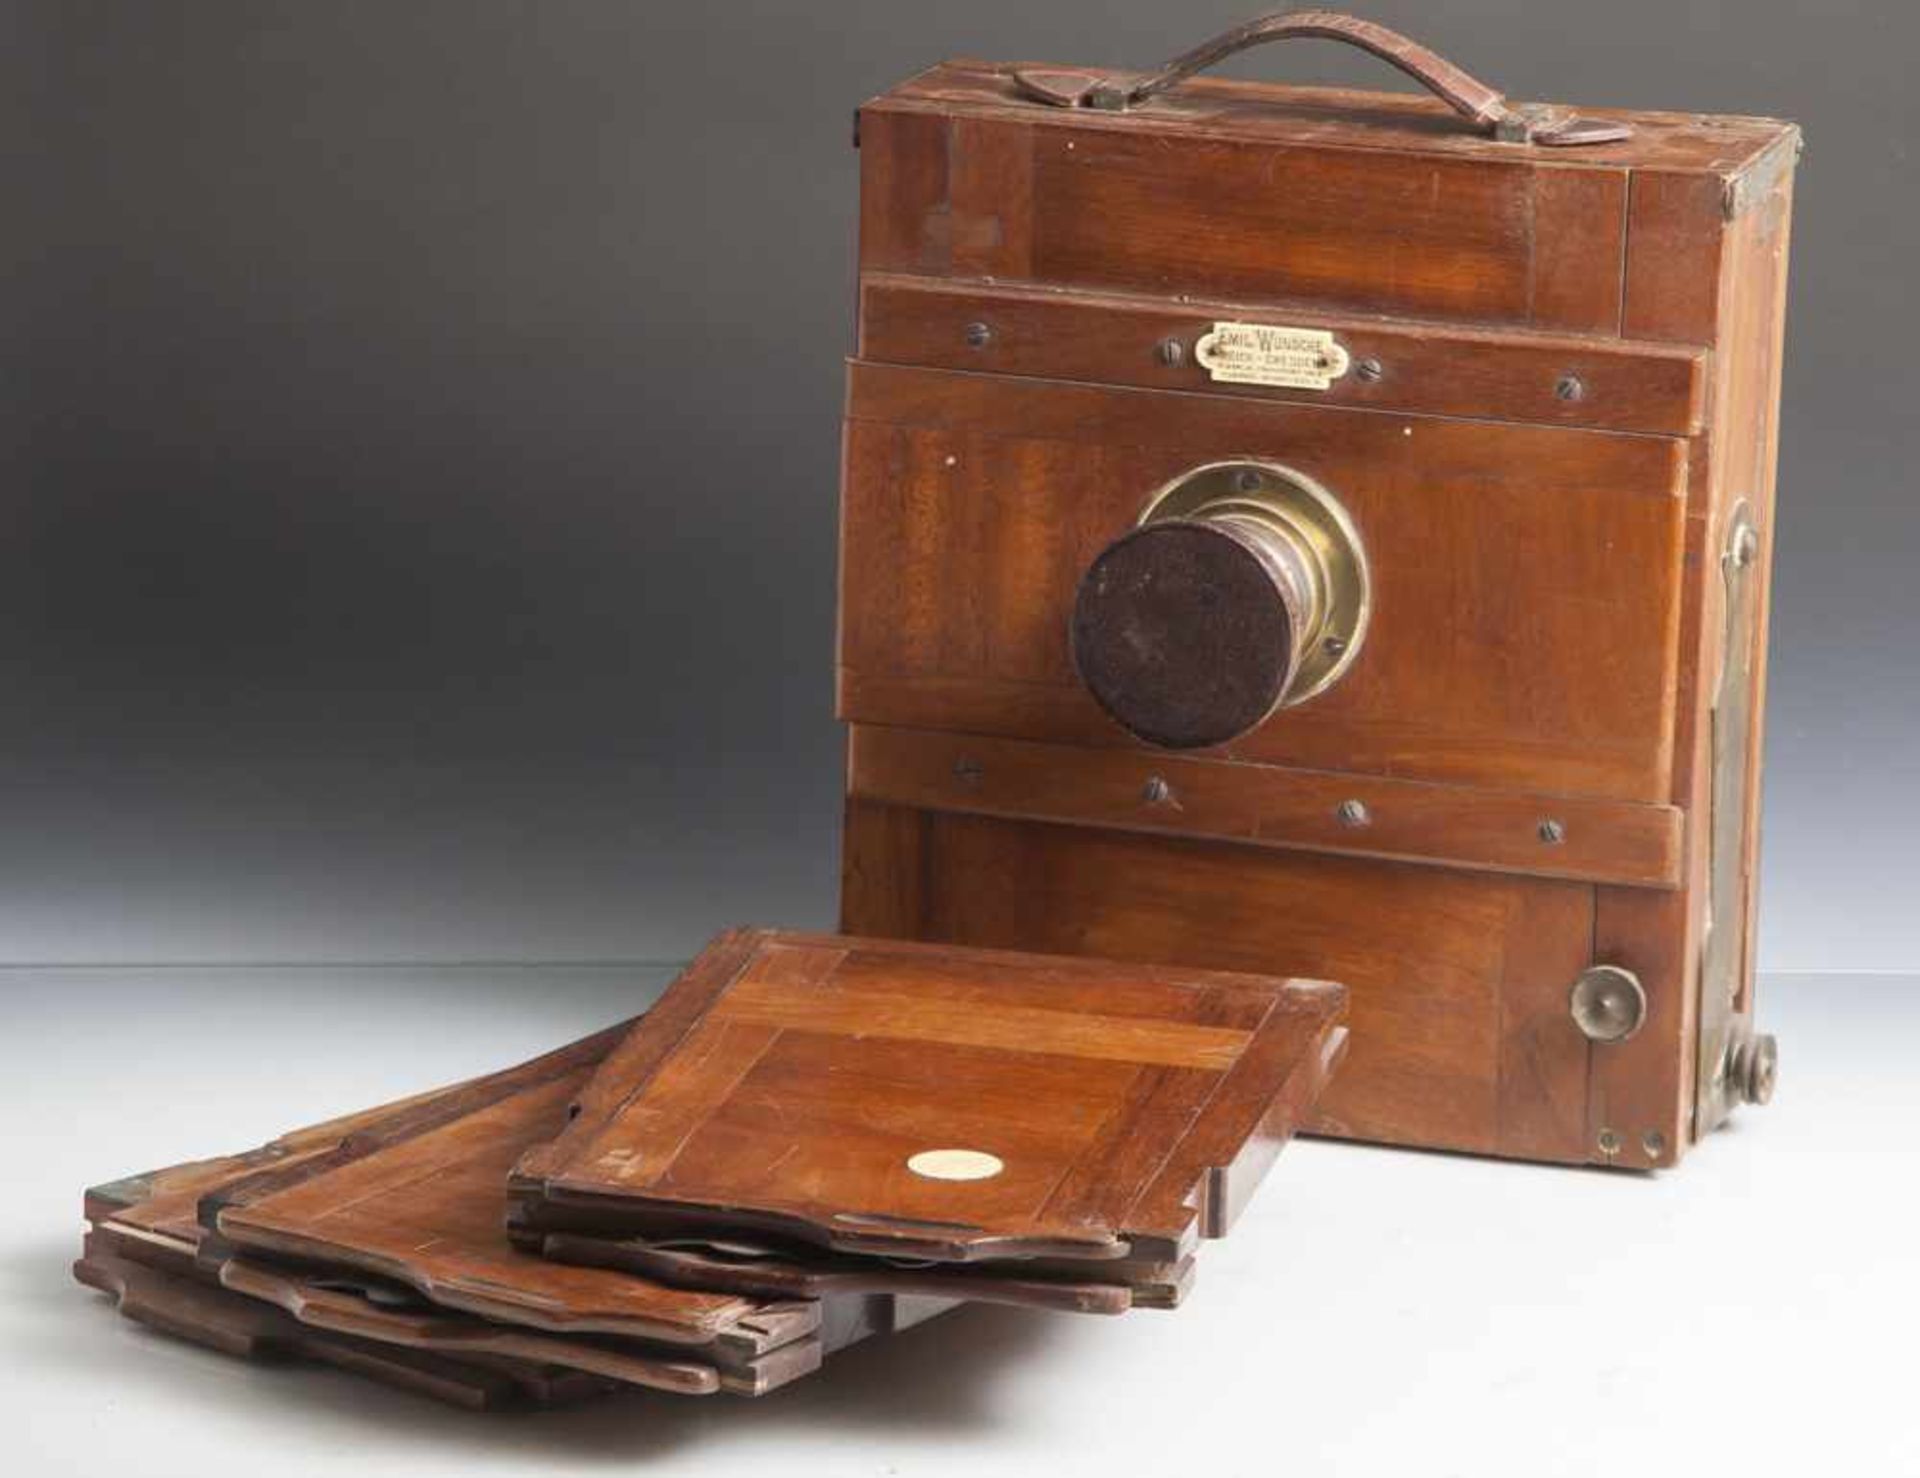 Plattenkamera mit 3 separaten Platten, wohl 19. Jahrhundert, Herst. Emil Wünsche AG in Dresden-